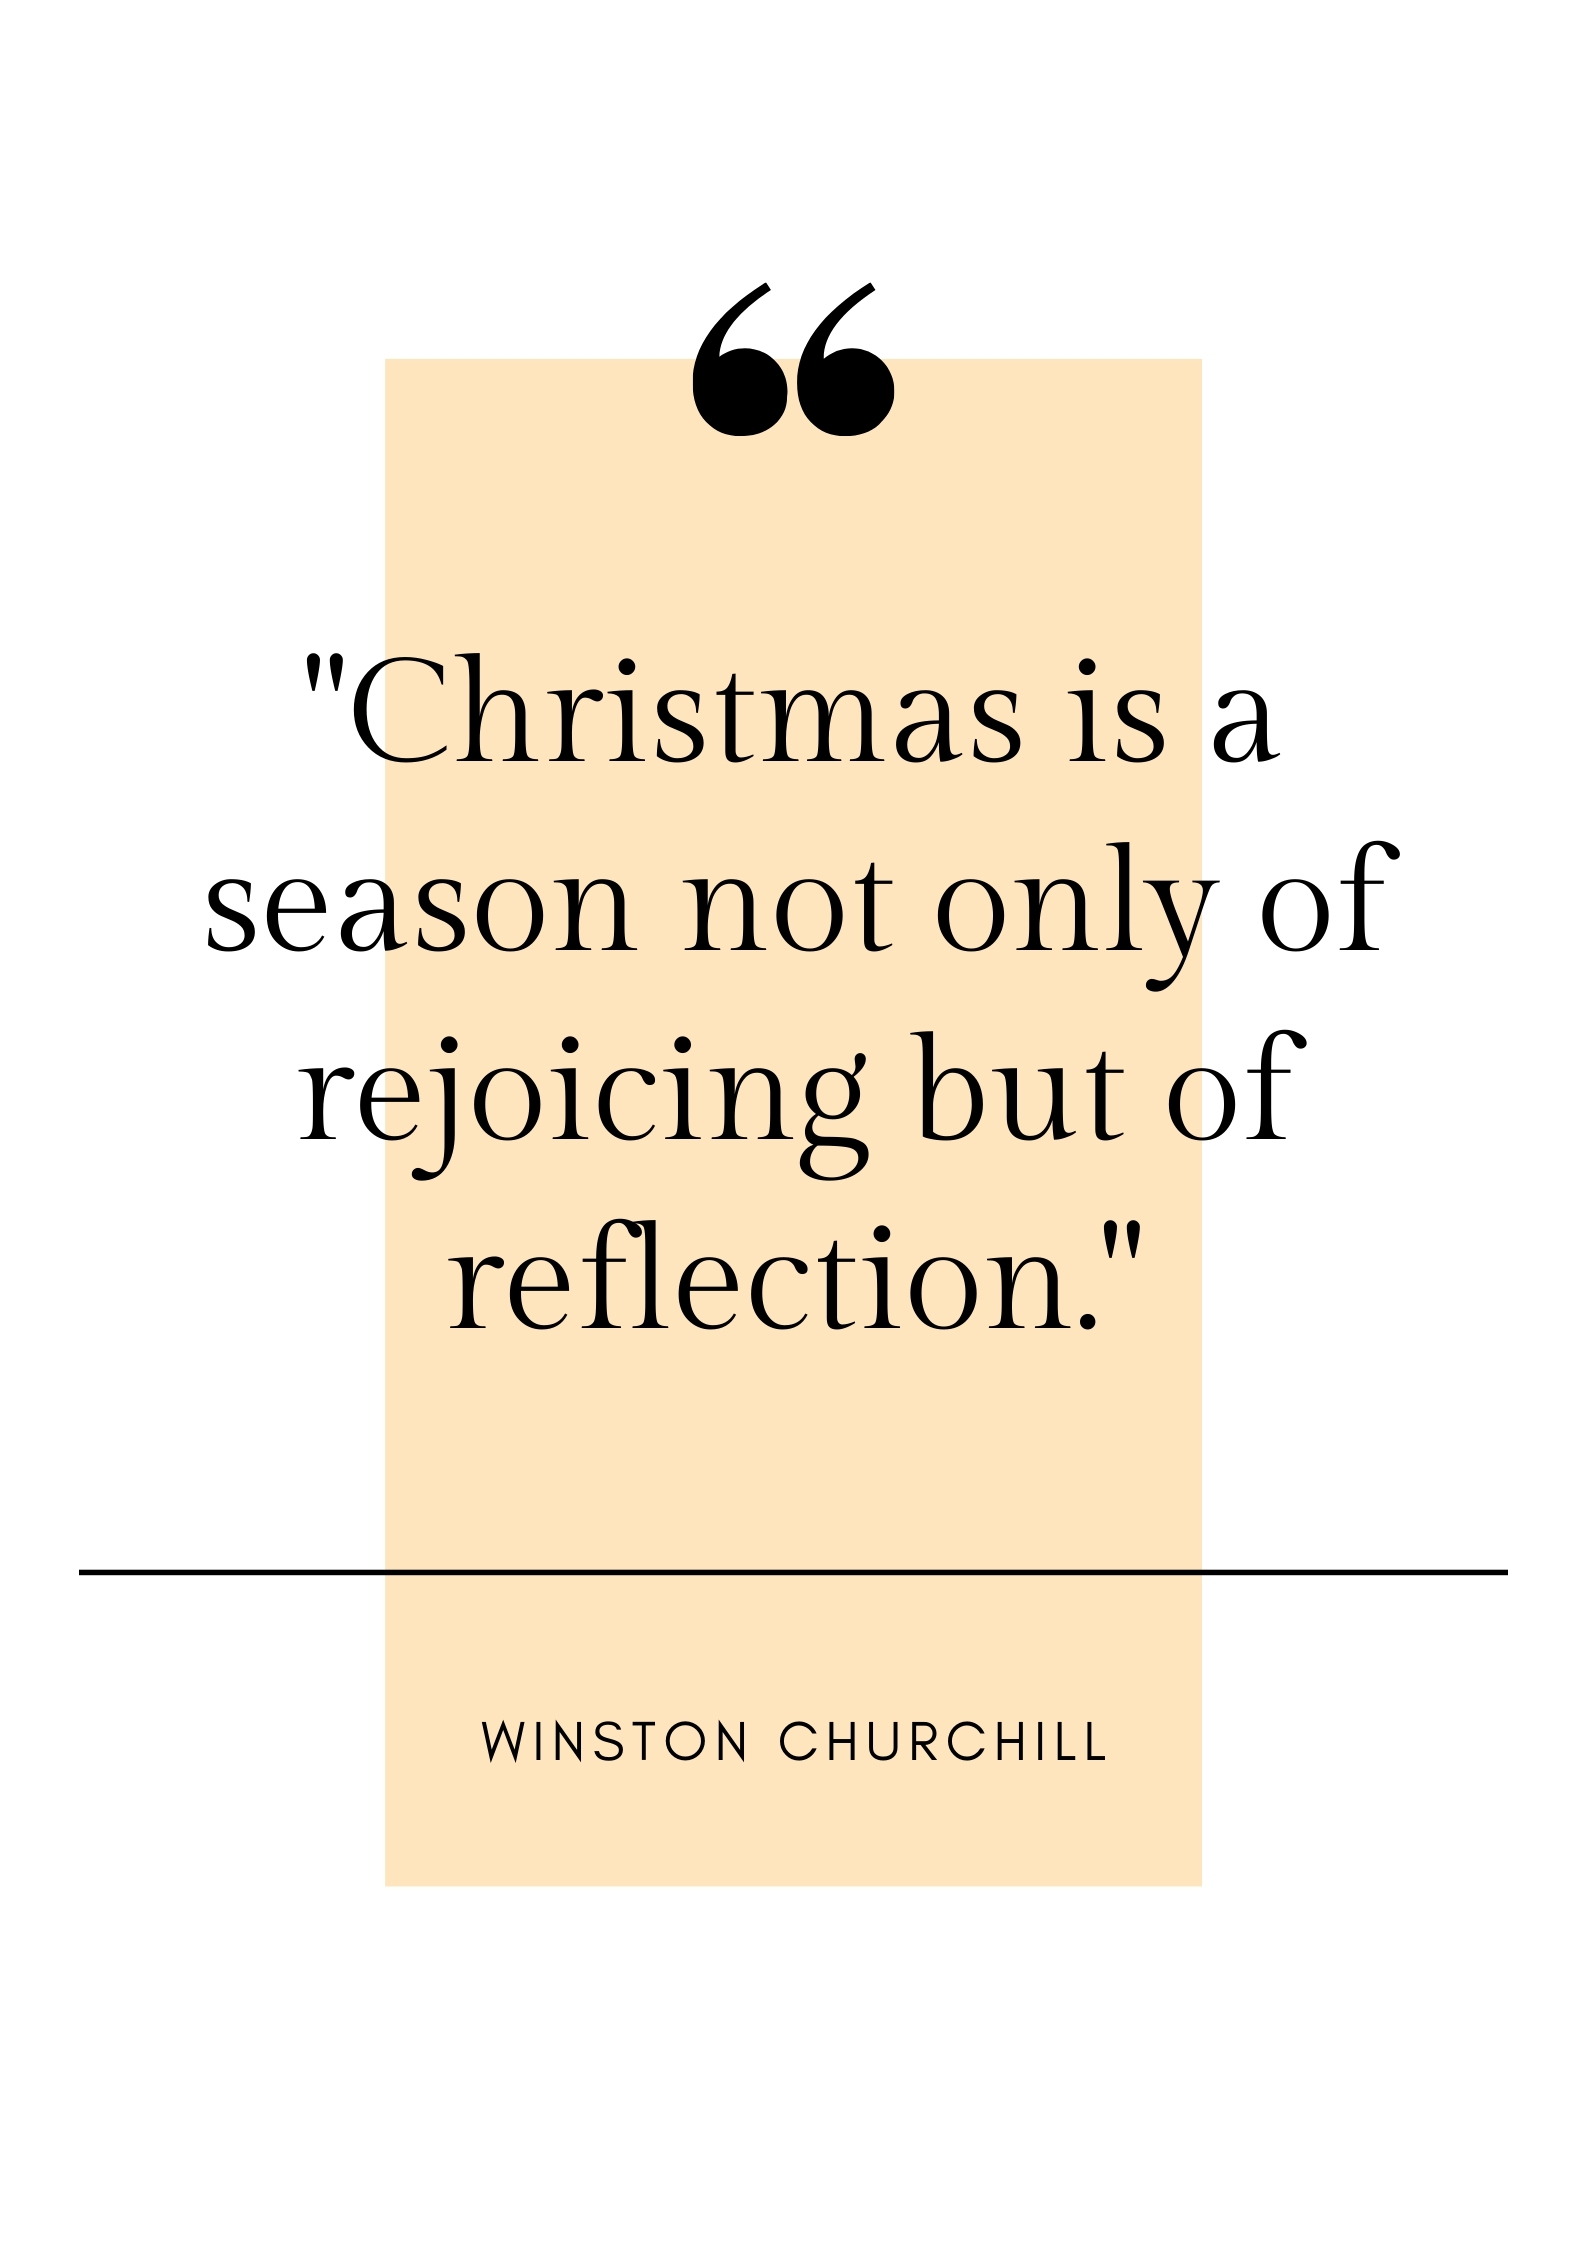 winston churchill quote